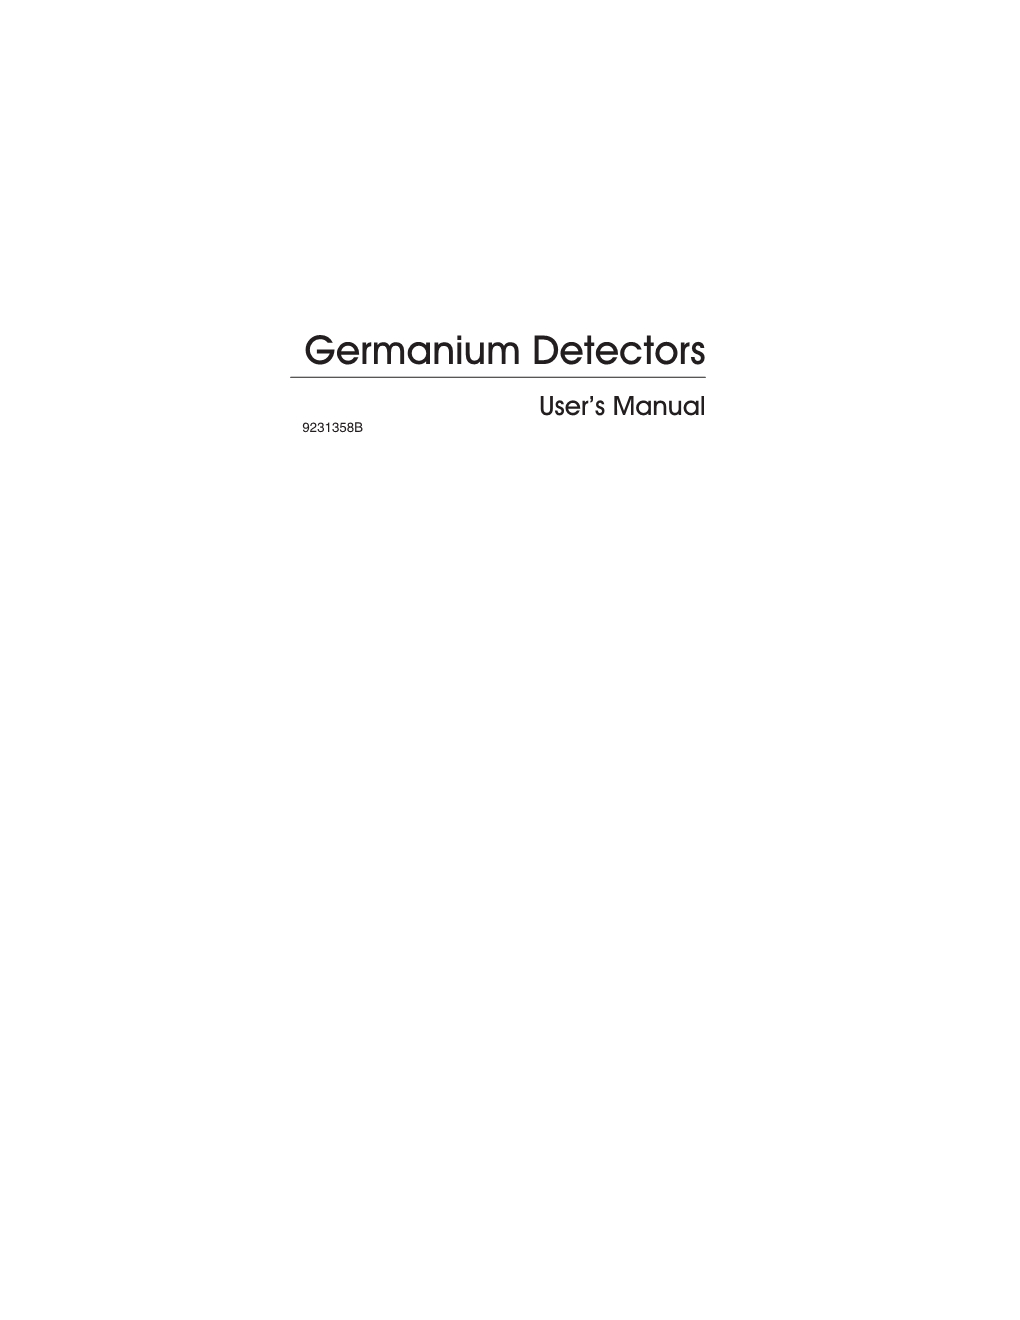 Germanium Detectors Manual.Vp